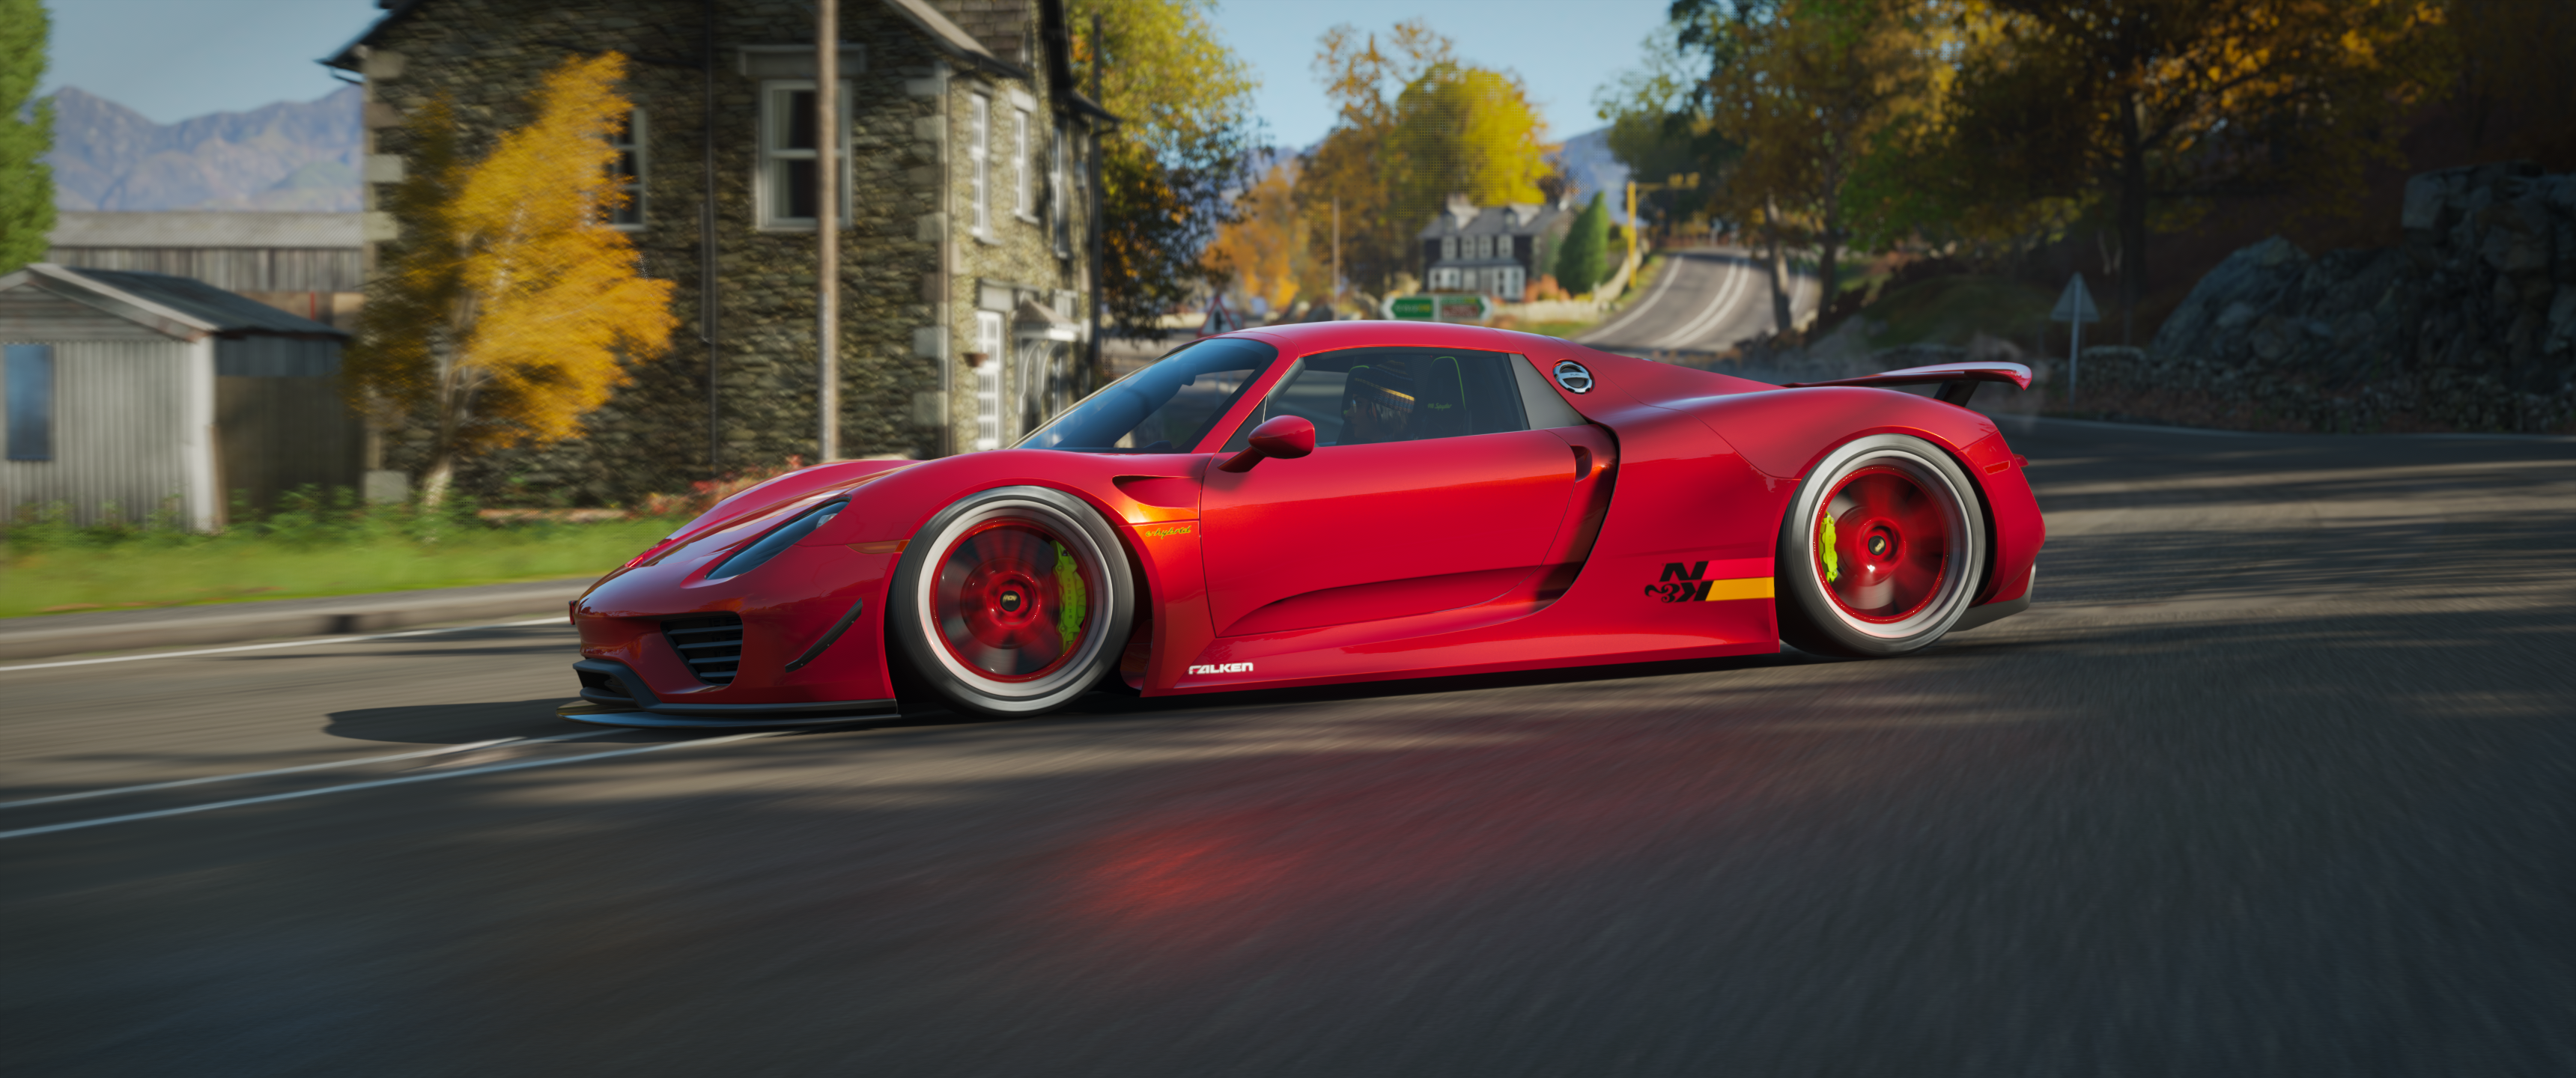 Forza Forza Horizon 4 Racing Car Ultrawide Video Games Porsche 918 Spyder 3440x1440